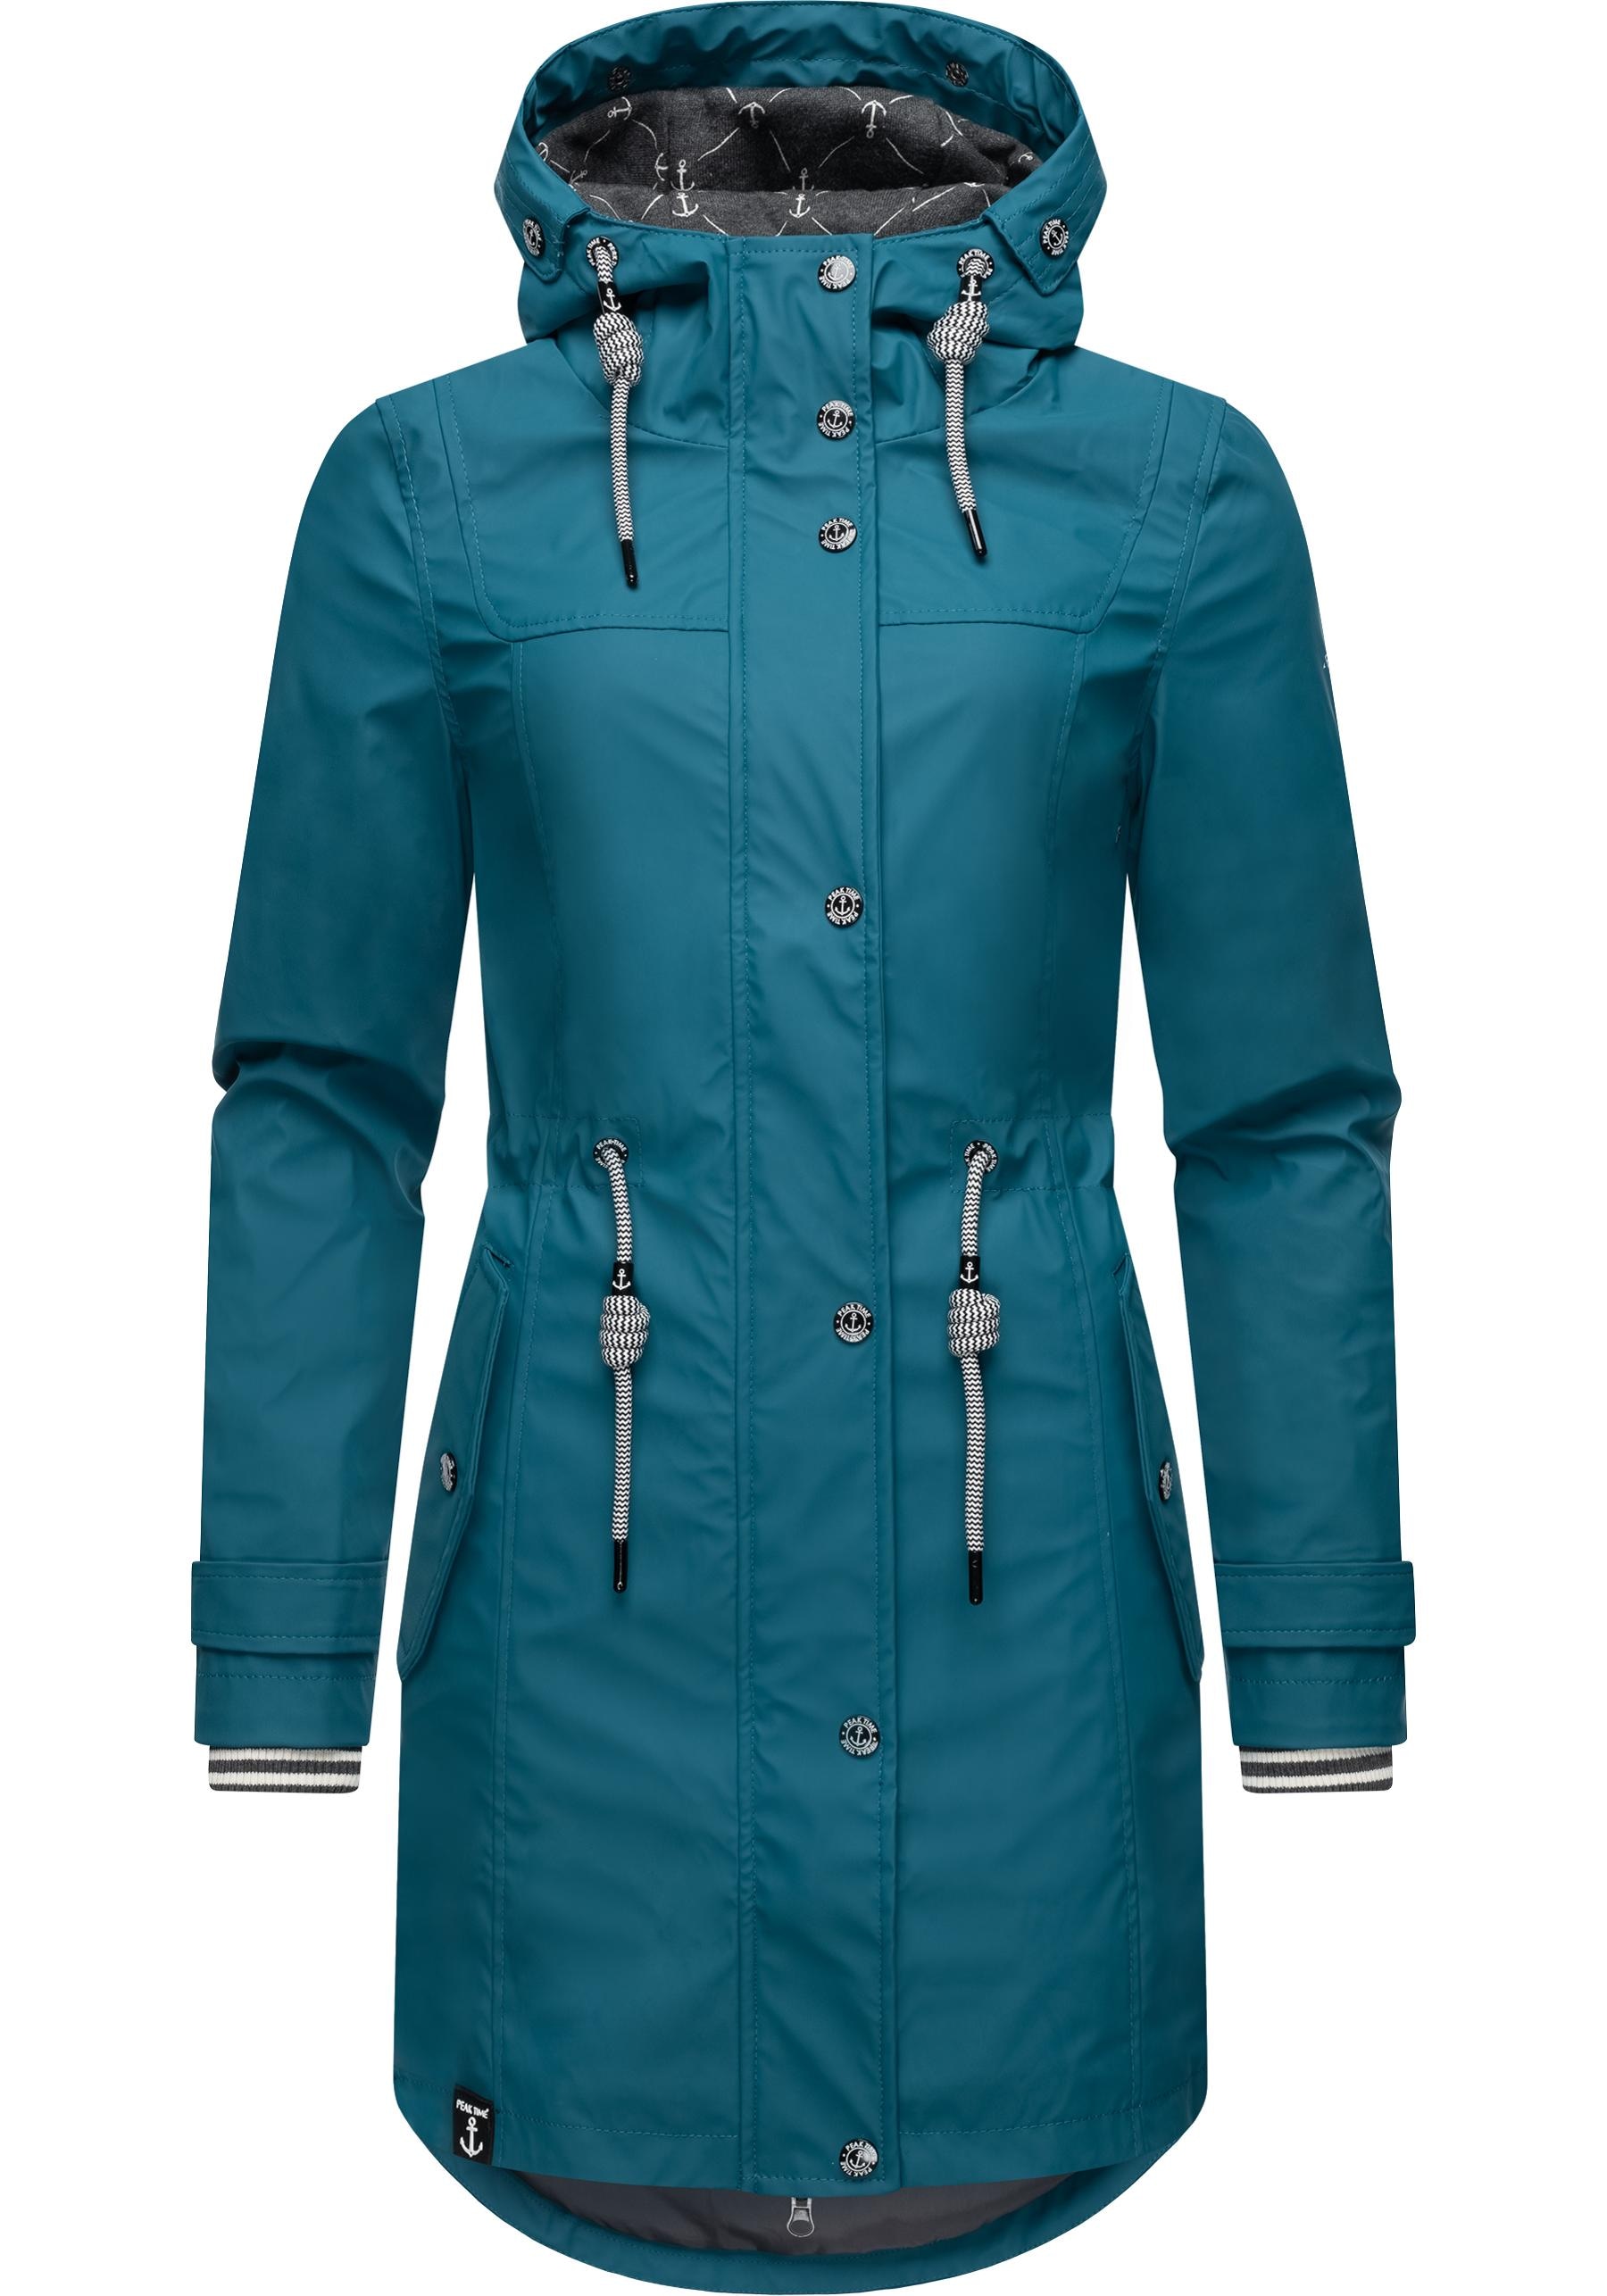 PEAK TIME Regenjacke »L60042«, mit Kapuze, stylisch taillierter Regenmantel  für Damen shoppen